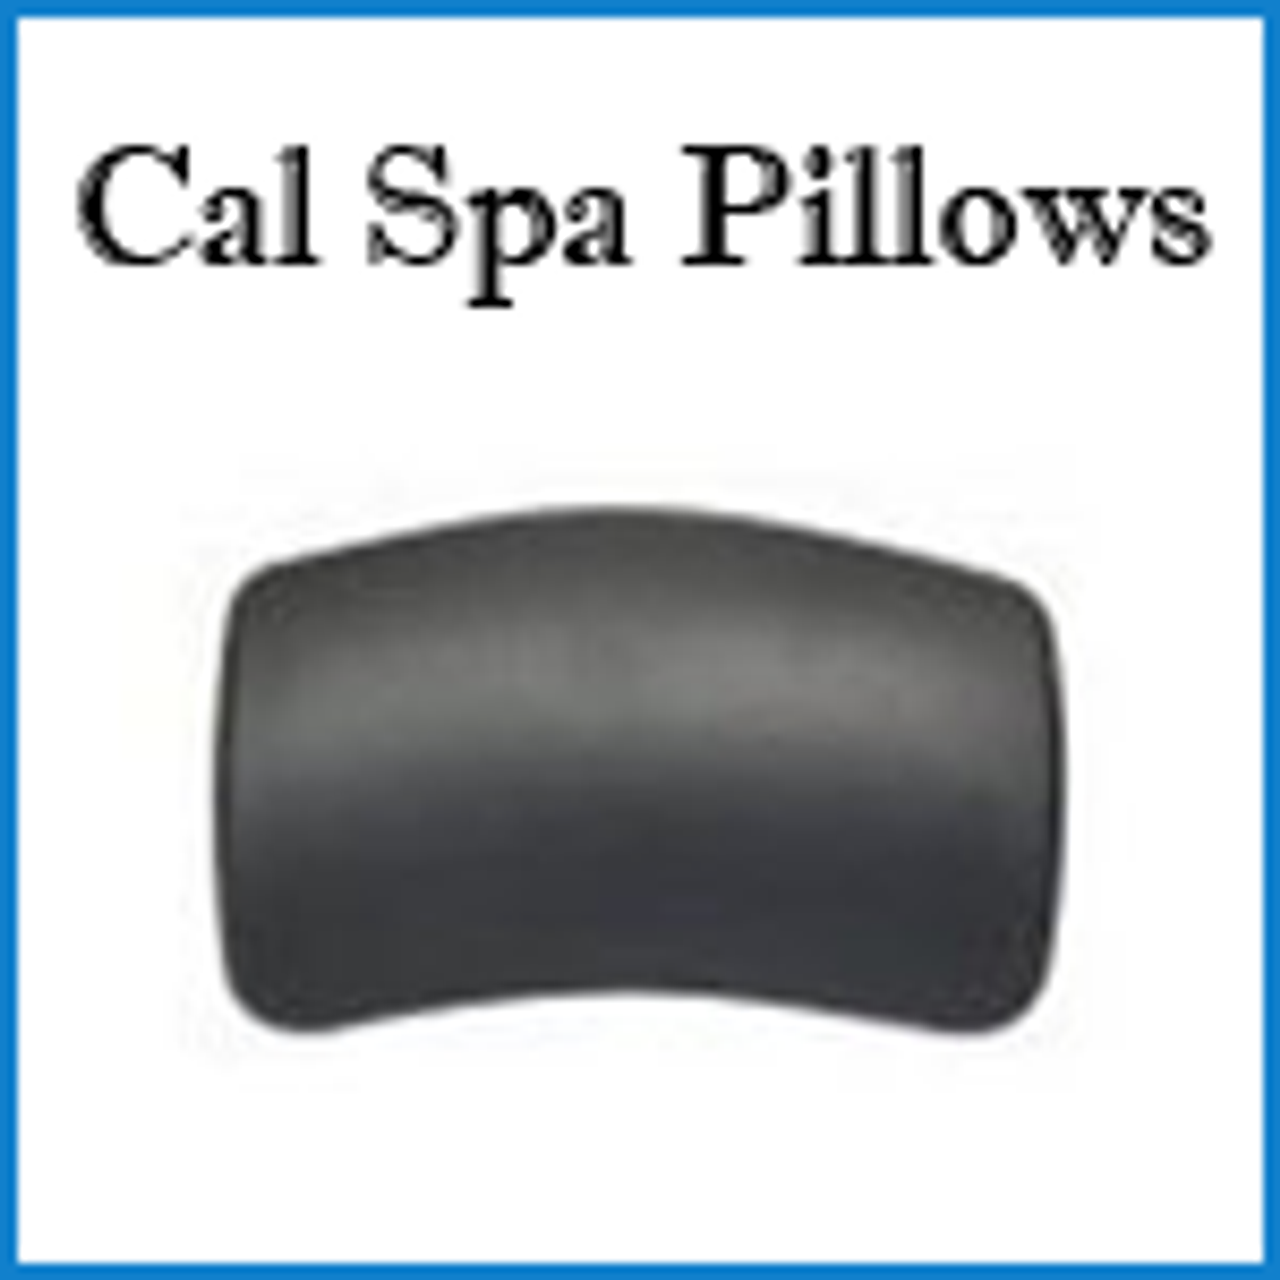 Cal Spas Pillows